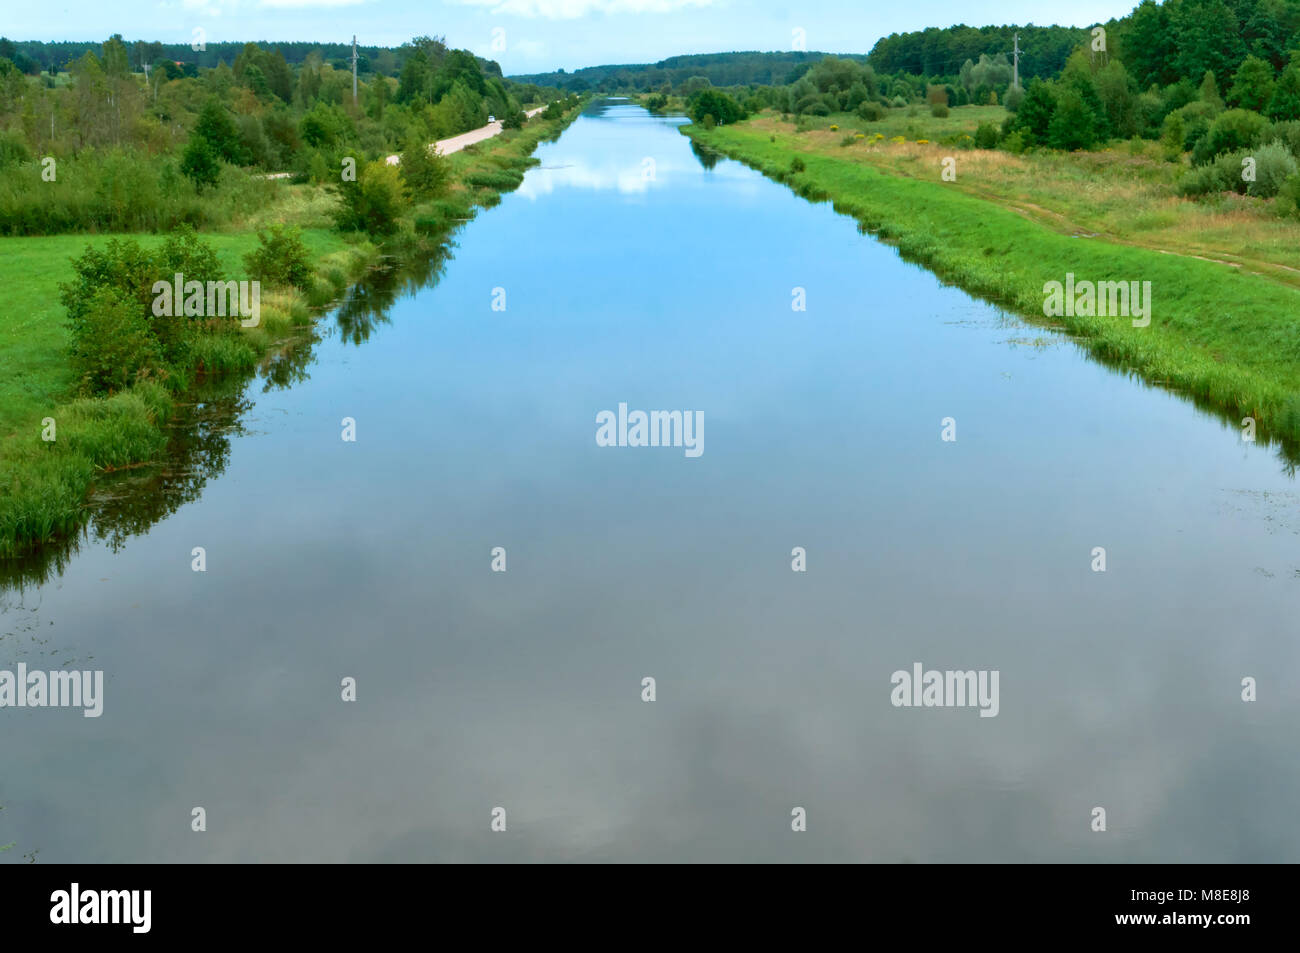 Canale liscio con il riflesso del cielo, lungo fiume con incolto verde banche, laghetto artificiale Foto Stock